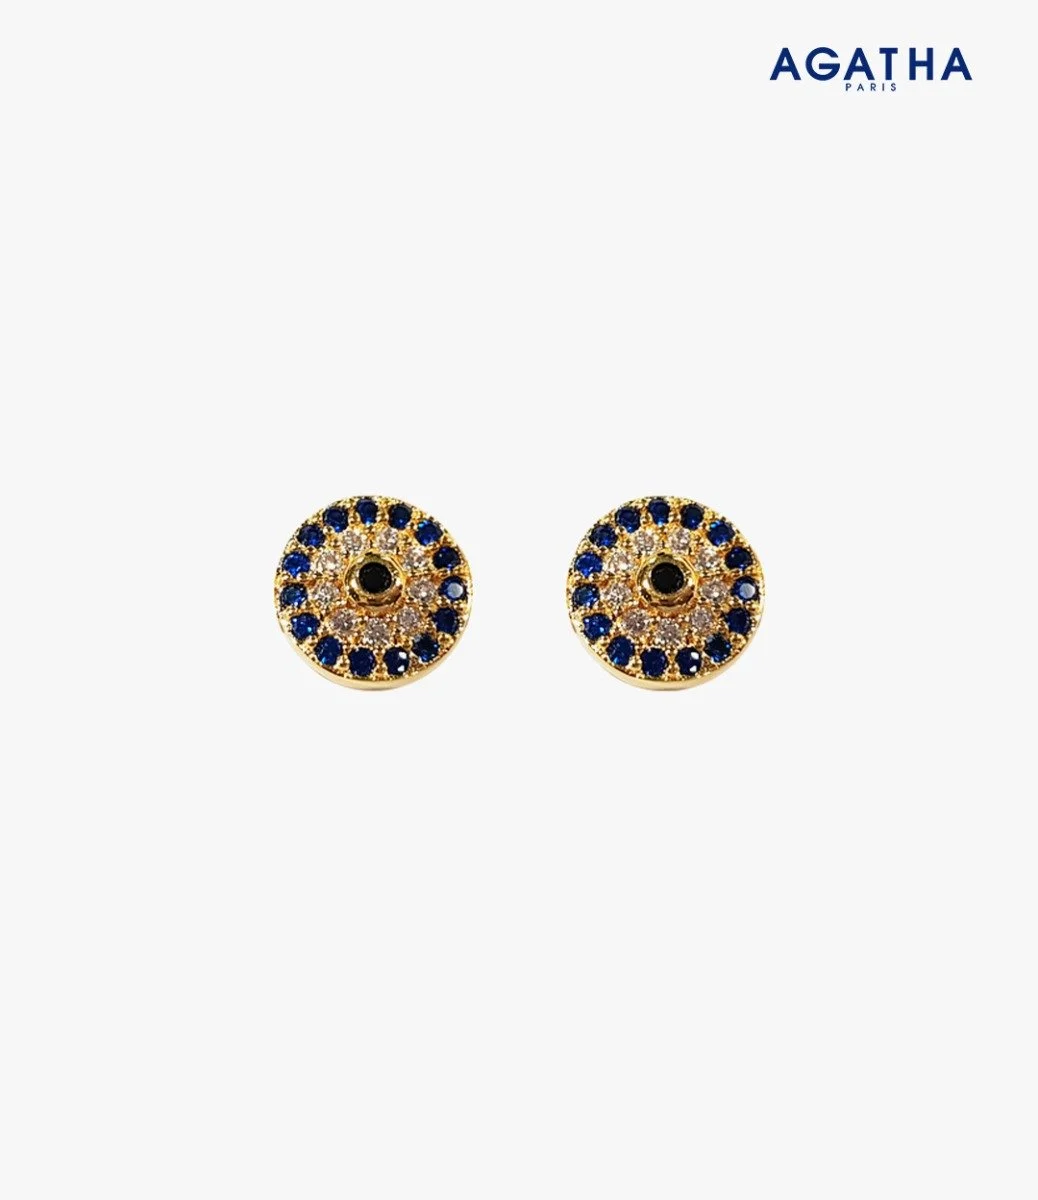 Turkish Eye Golden Earrings by Agatha